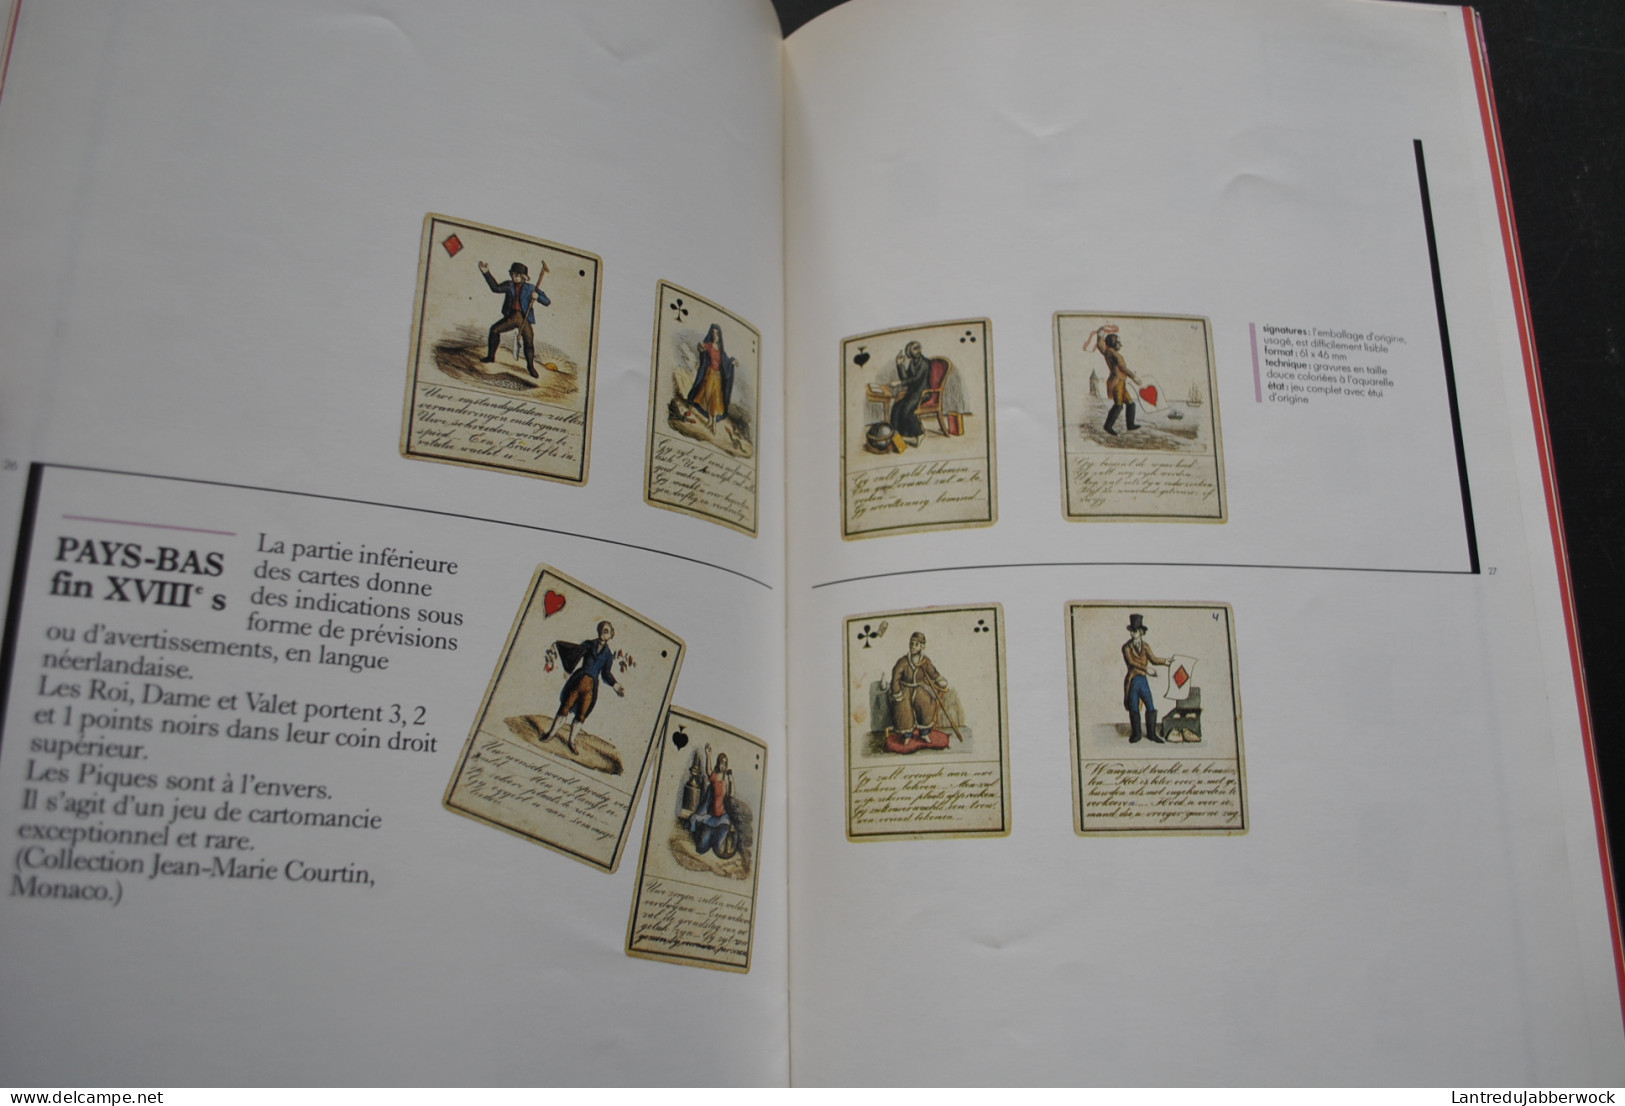 Musée Des Arts Décoratifs Cartes à Jouer Anciennes Un Rêve De Collectionneur Catalogue D'exposition 1981 RARE  - Cartes à Jouer Classiques